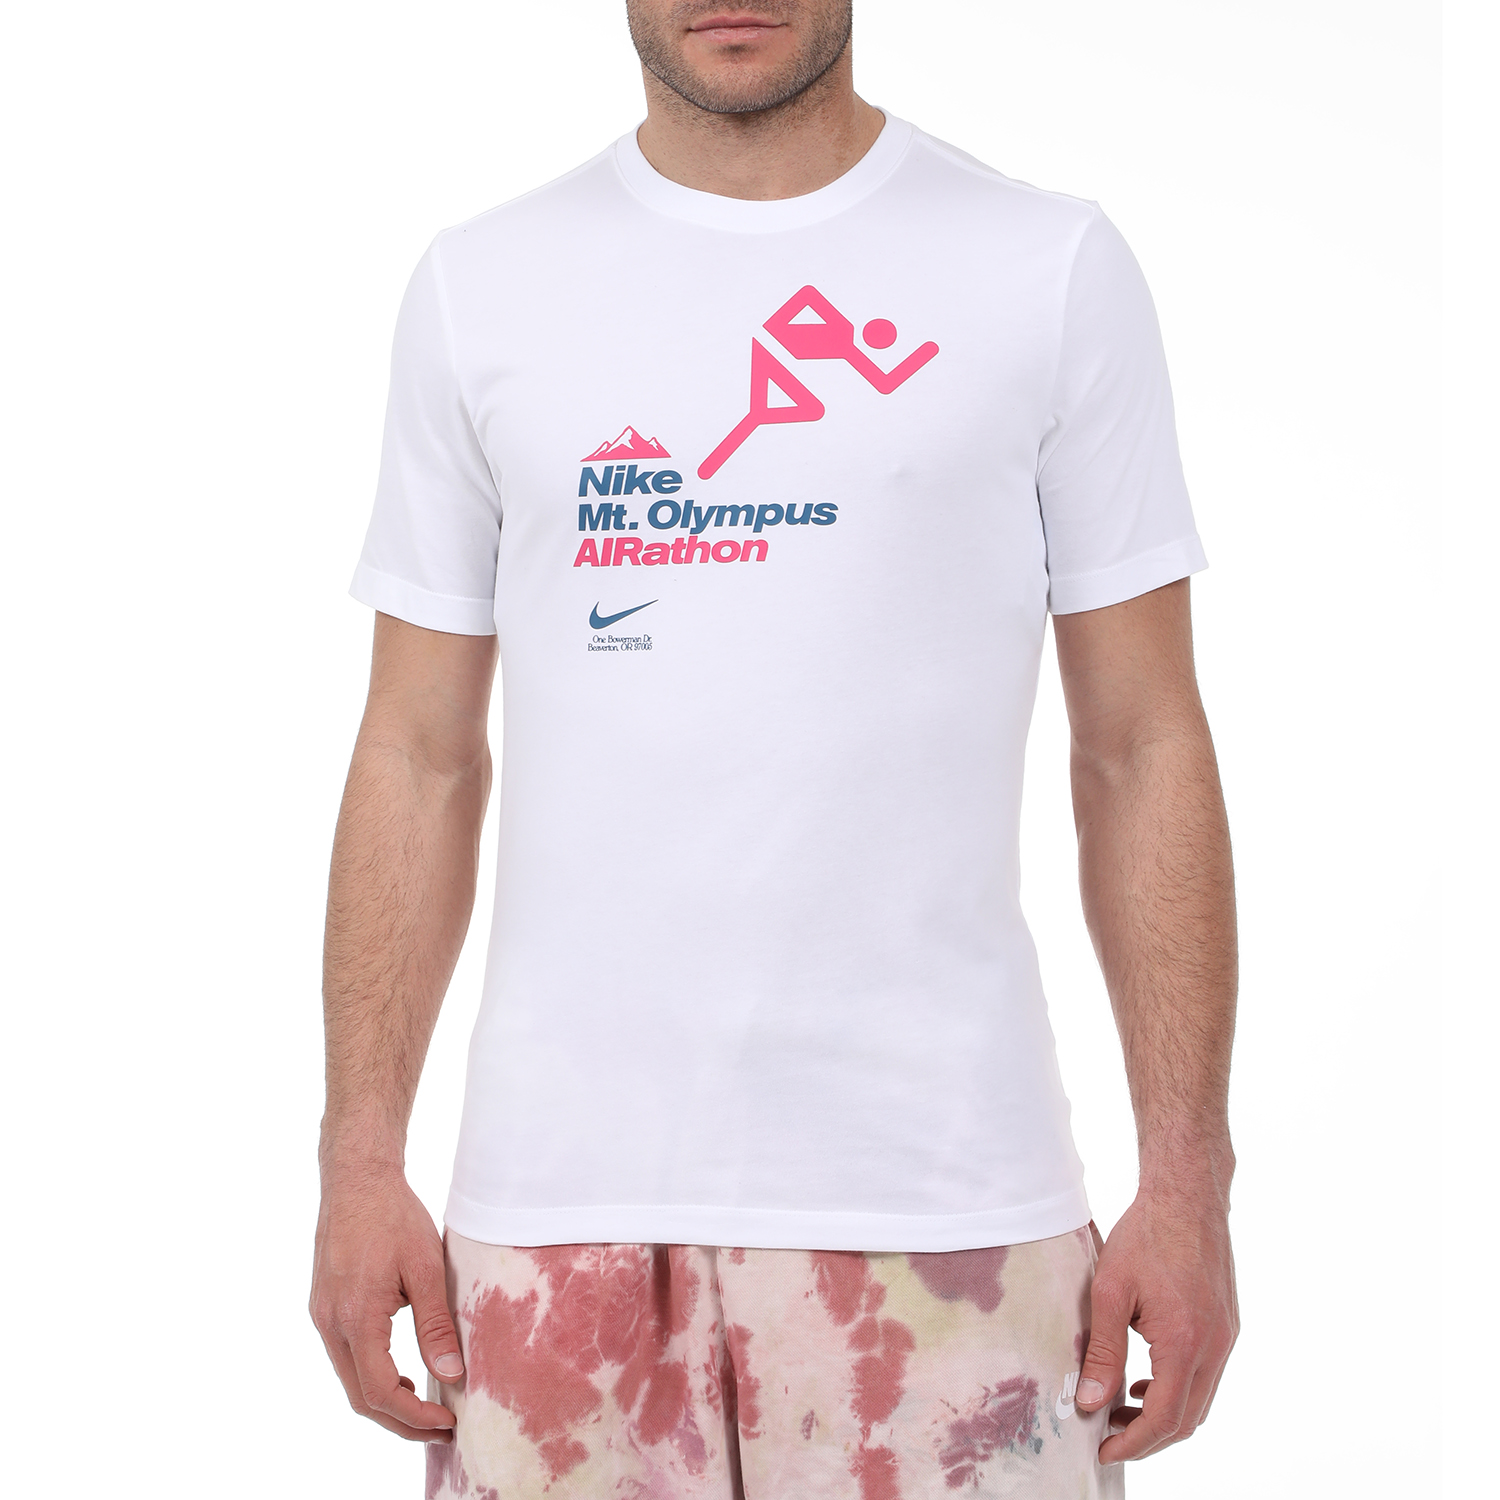 Ανδρικά/Ρούχα/Αθλητικά/T-shirt NIKE - Ανδρικό t-shirt NIKE DRY TEE AIRATHON λευκό